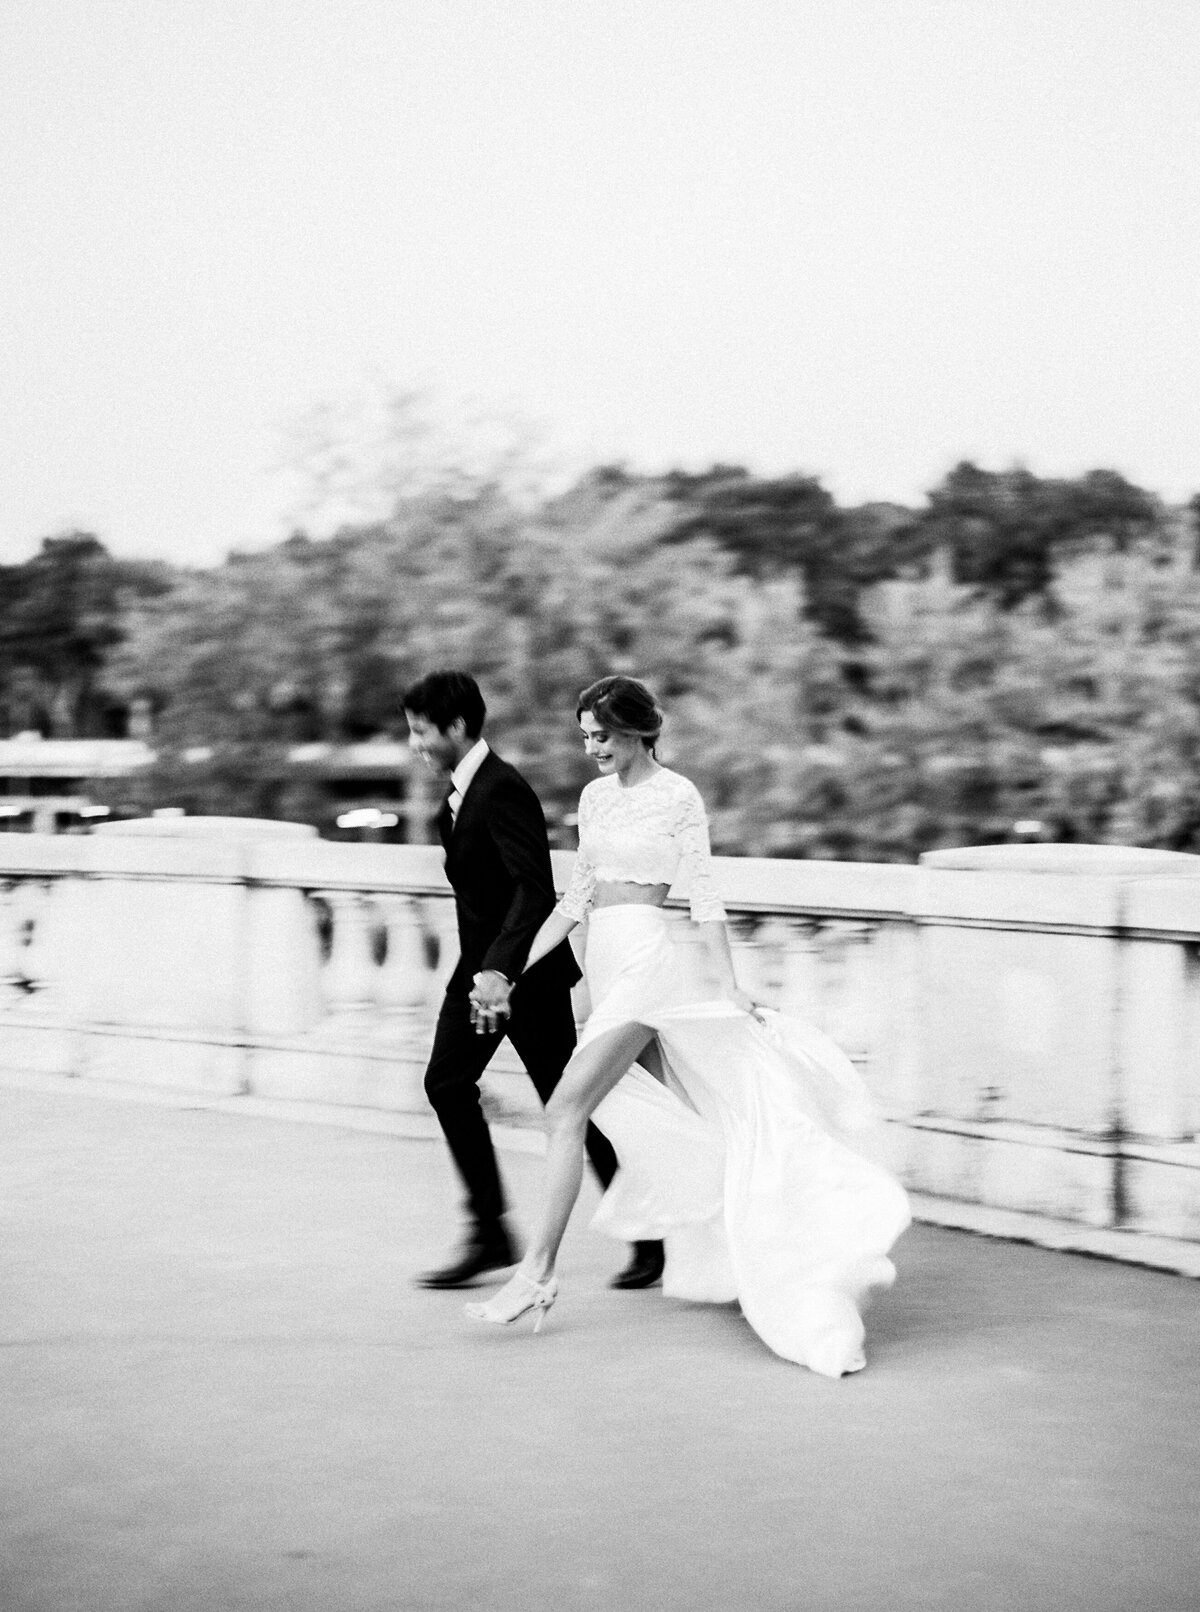 Parisian Elopement | Paris, France | Mary Claire Photography | Arizona & Destination Fine Art Wedding Photographer